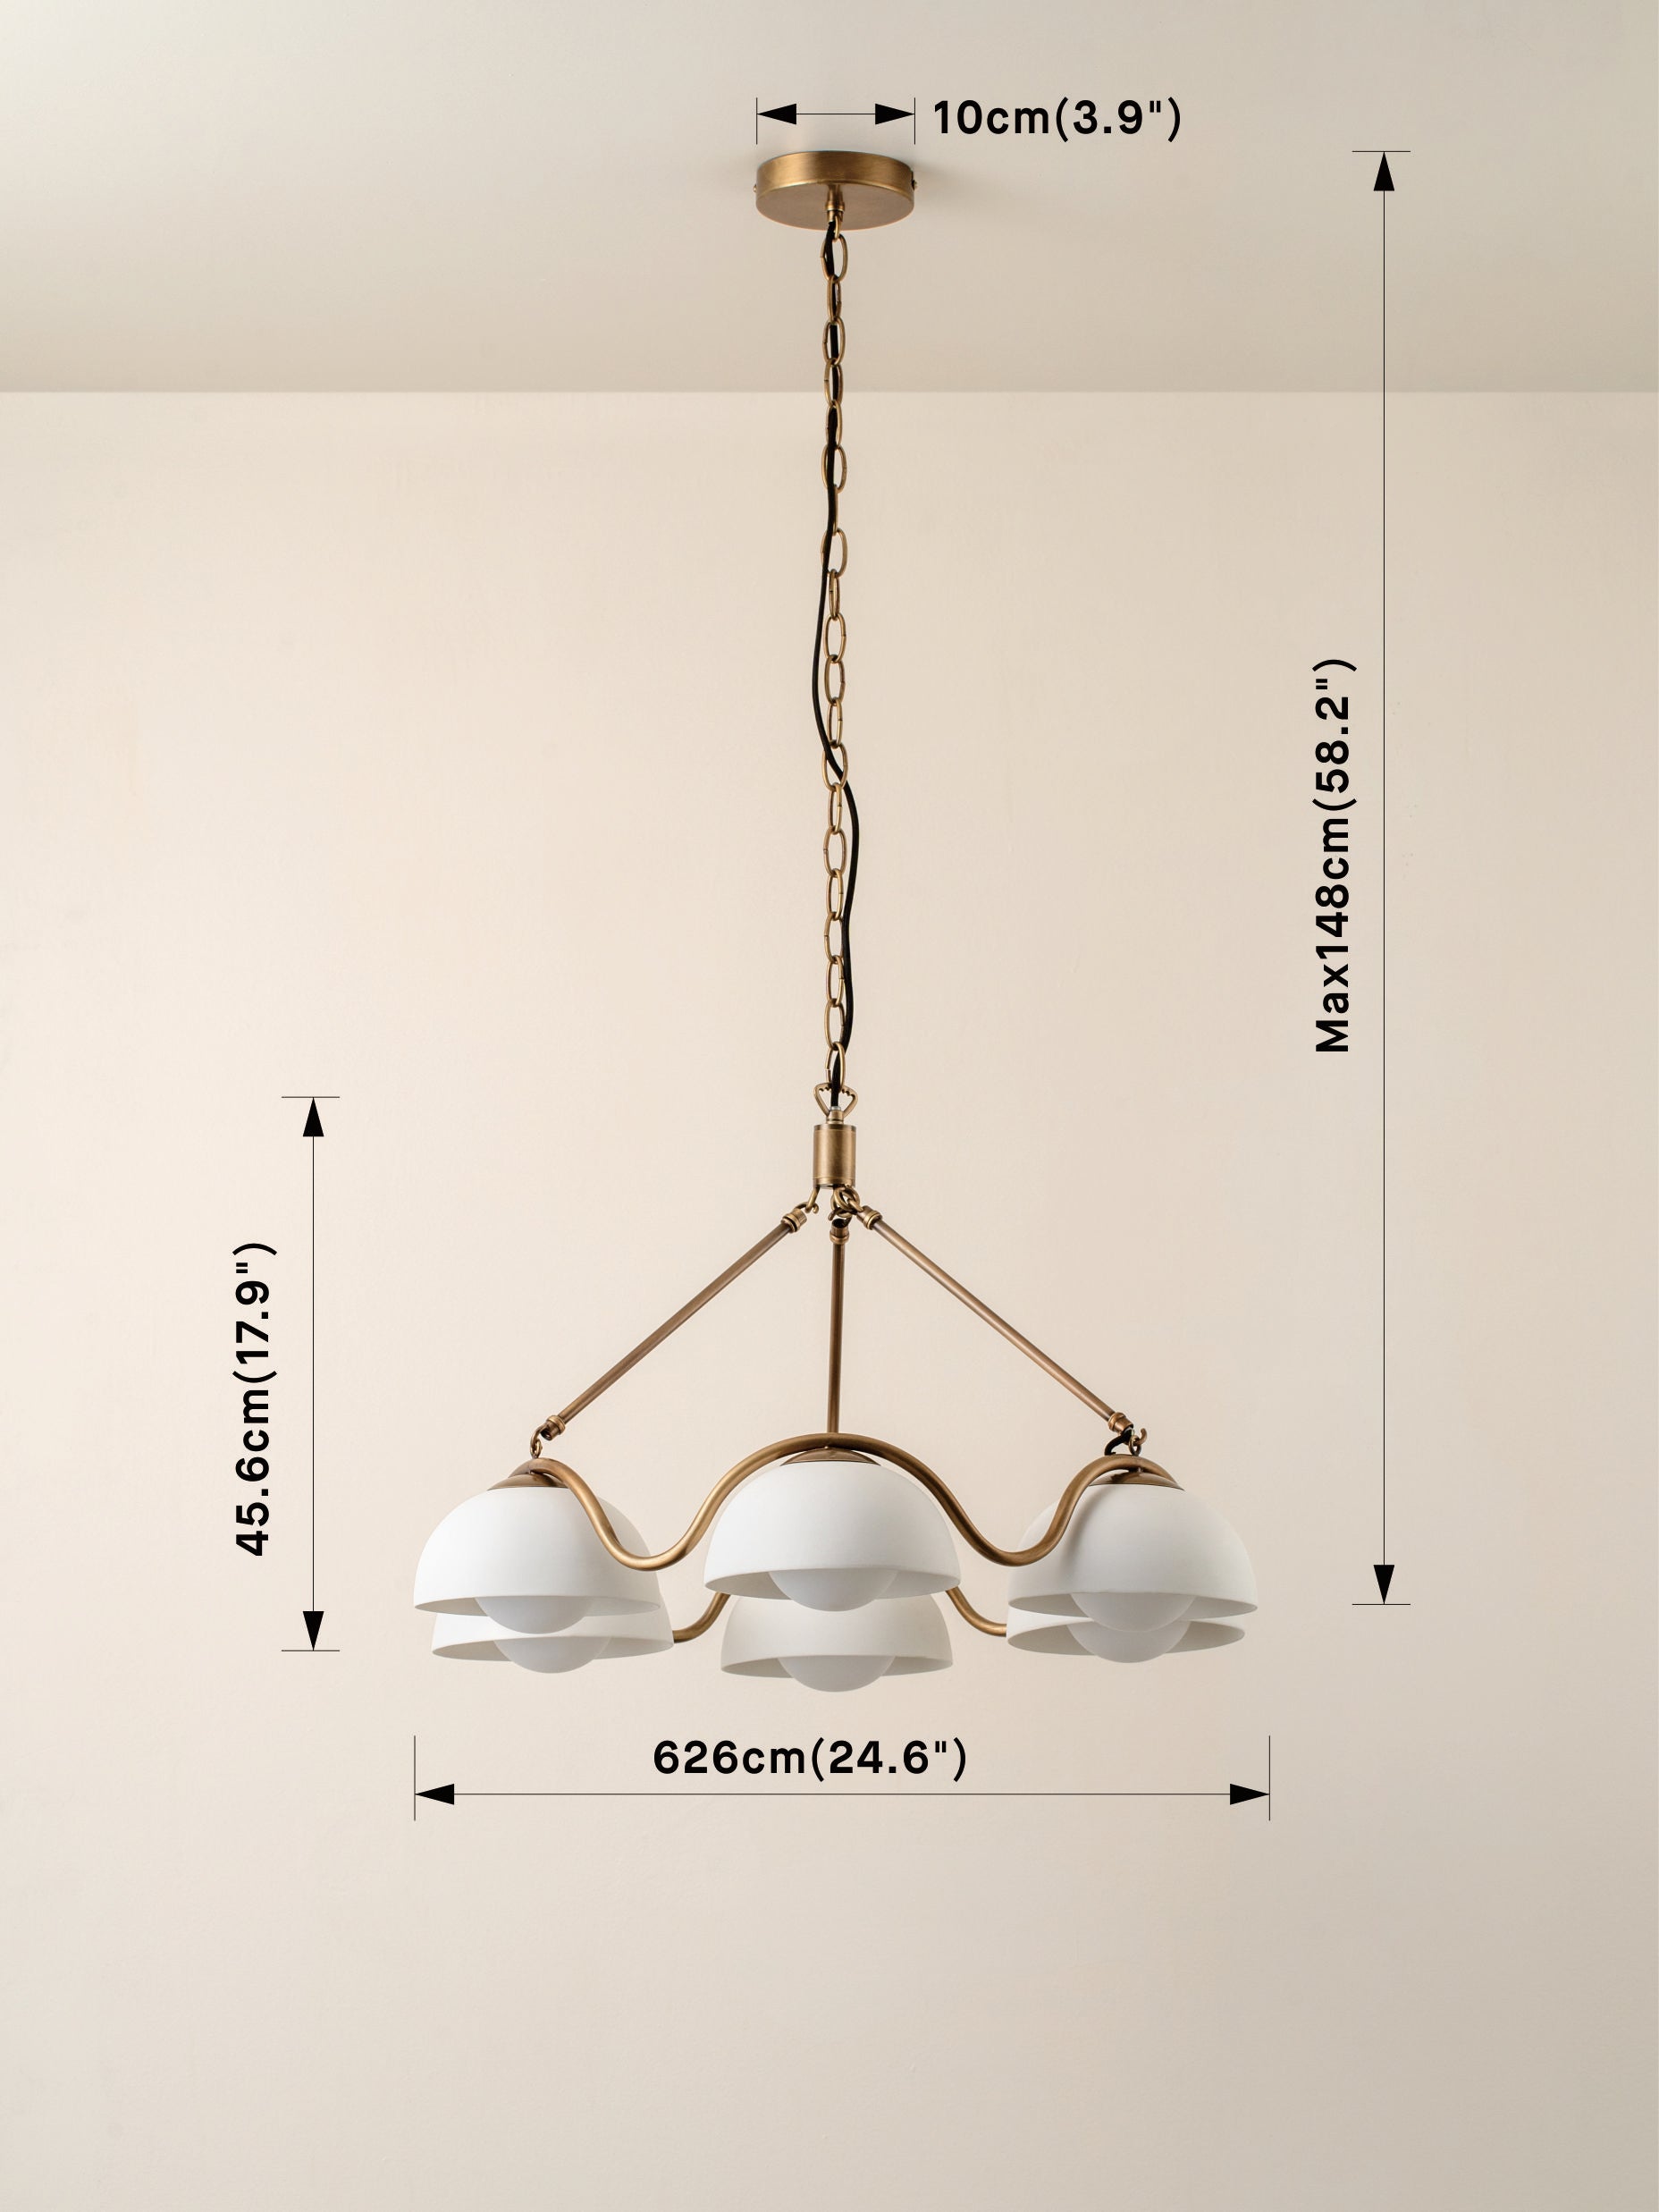 Waverly - 6 light aged brass and white porcelain pendant | Ceiling Light | Lights & Lamps | UK | Modern Affordable Designer Lighting